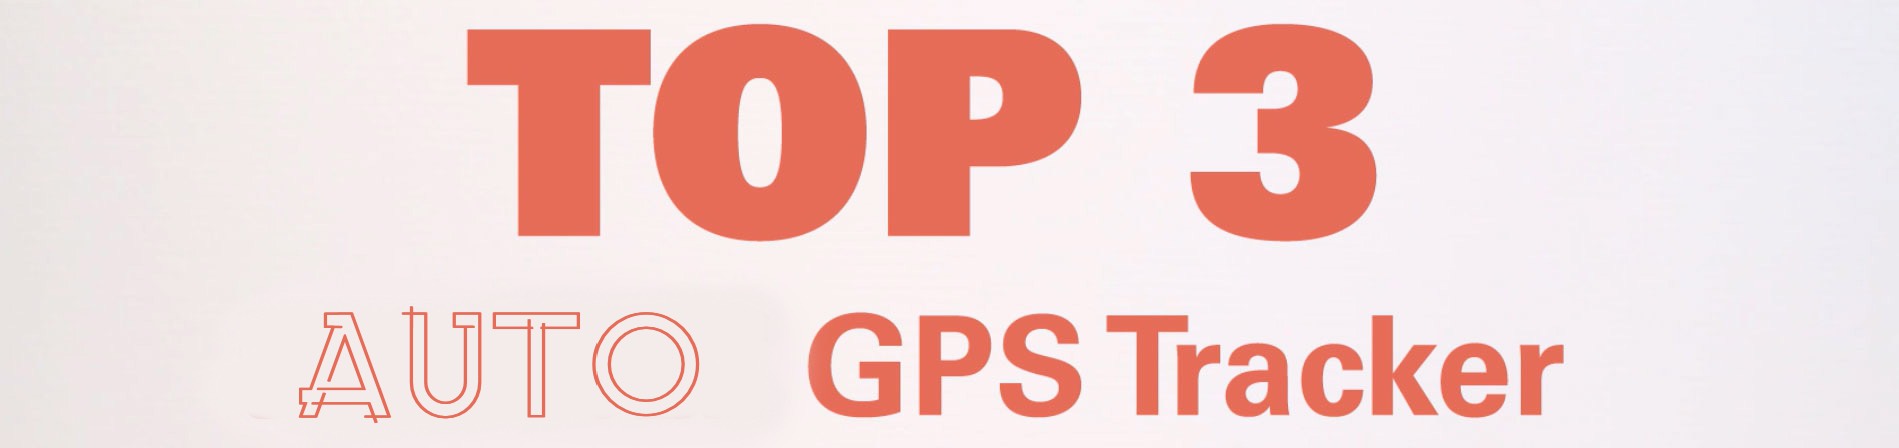 Diebstahlschutz Auto GPS